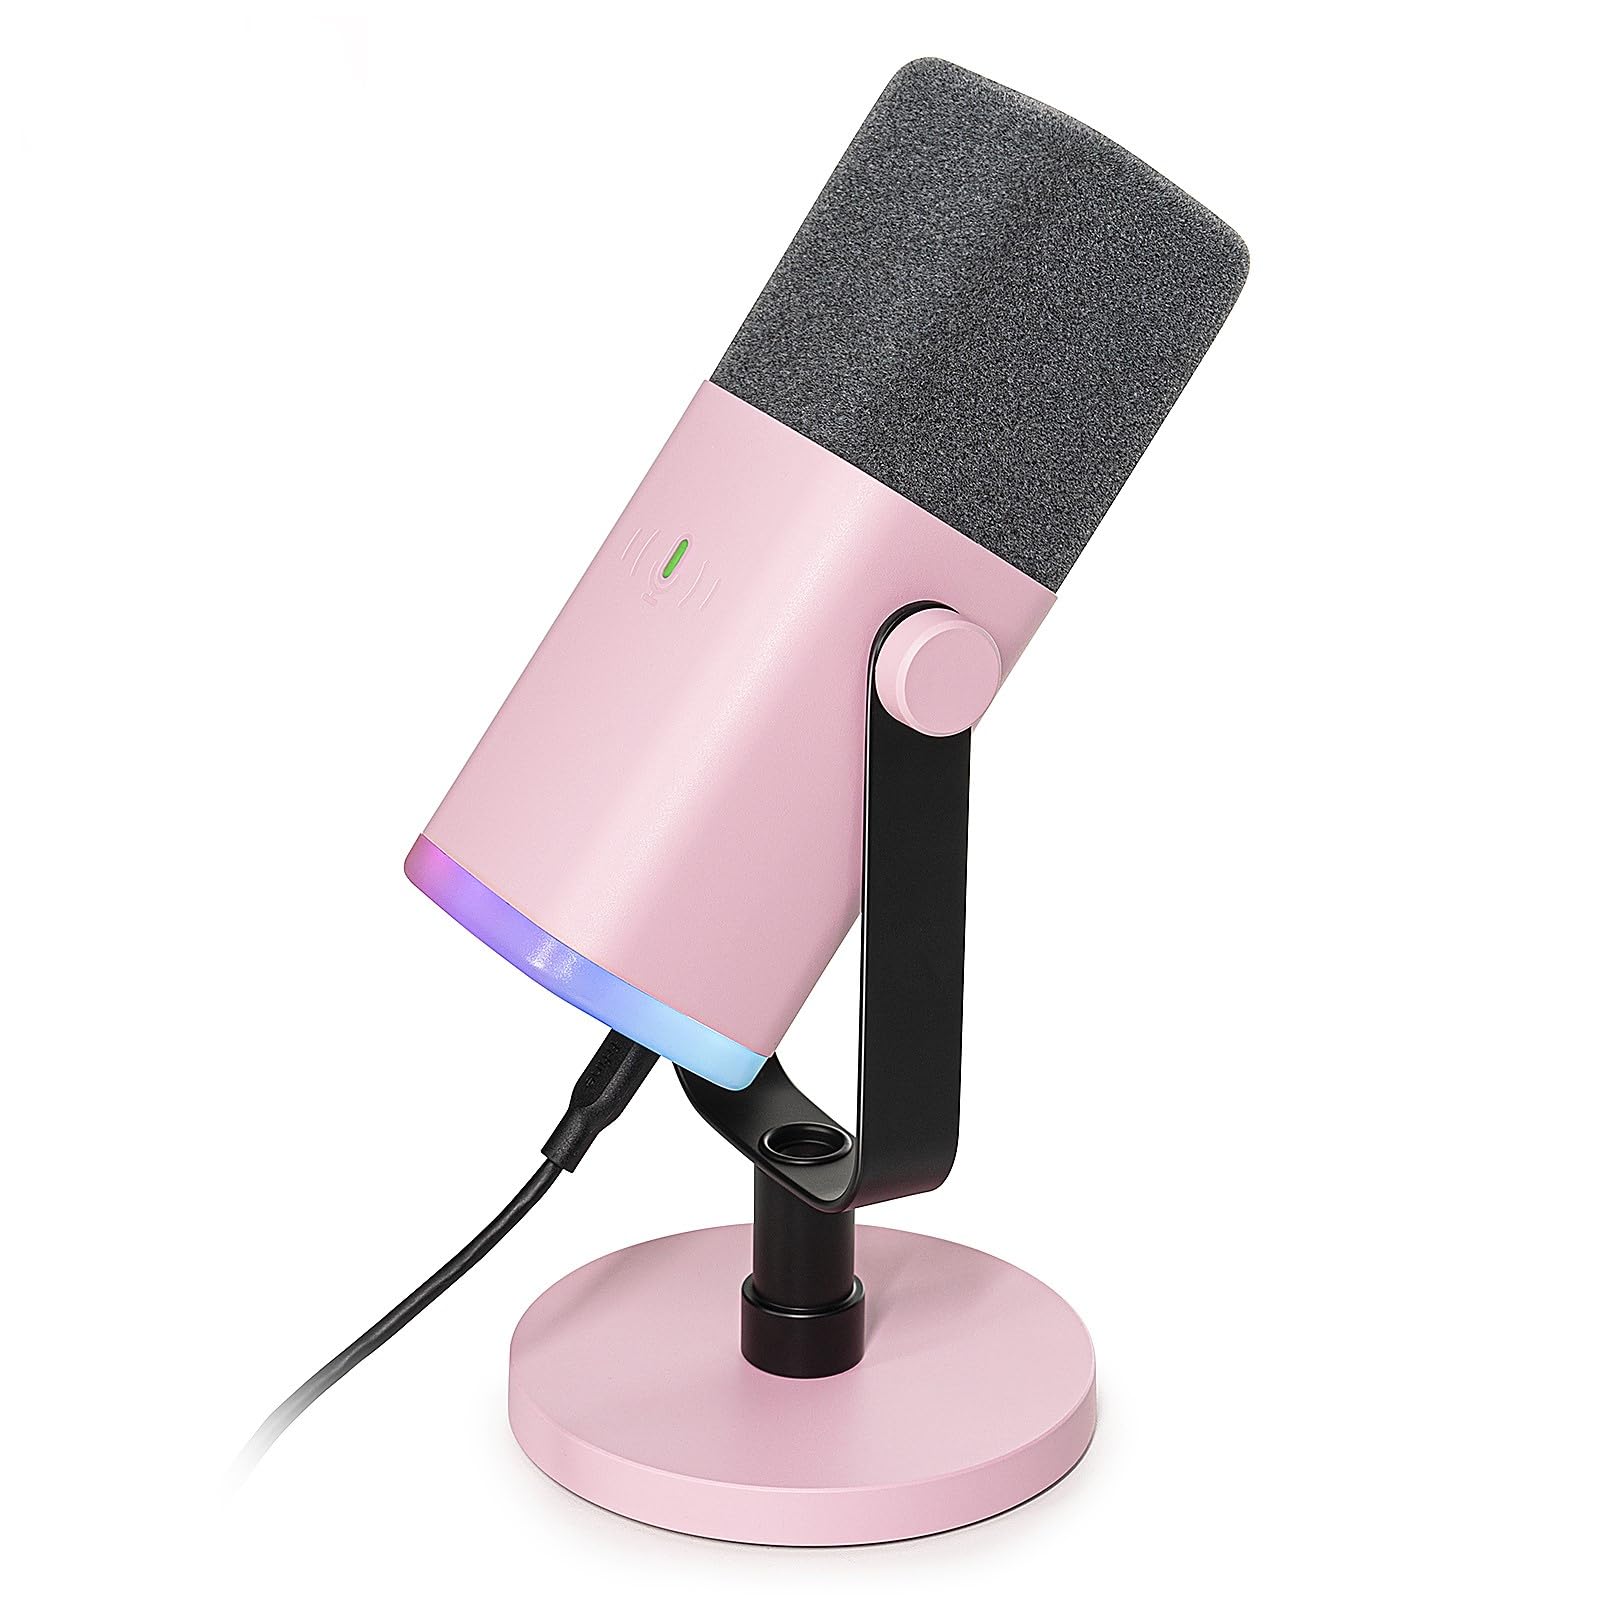 Exclusif FIFINE Microphone USB XLR pour studio de streaming podcast - Microphone dynamique - Avec bouton muet - Pour PS4/5 Mac Mixer Cartes son pOutv3clA Outlet Shop 